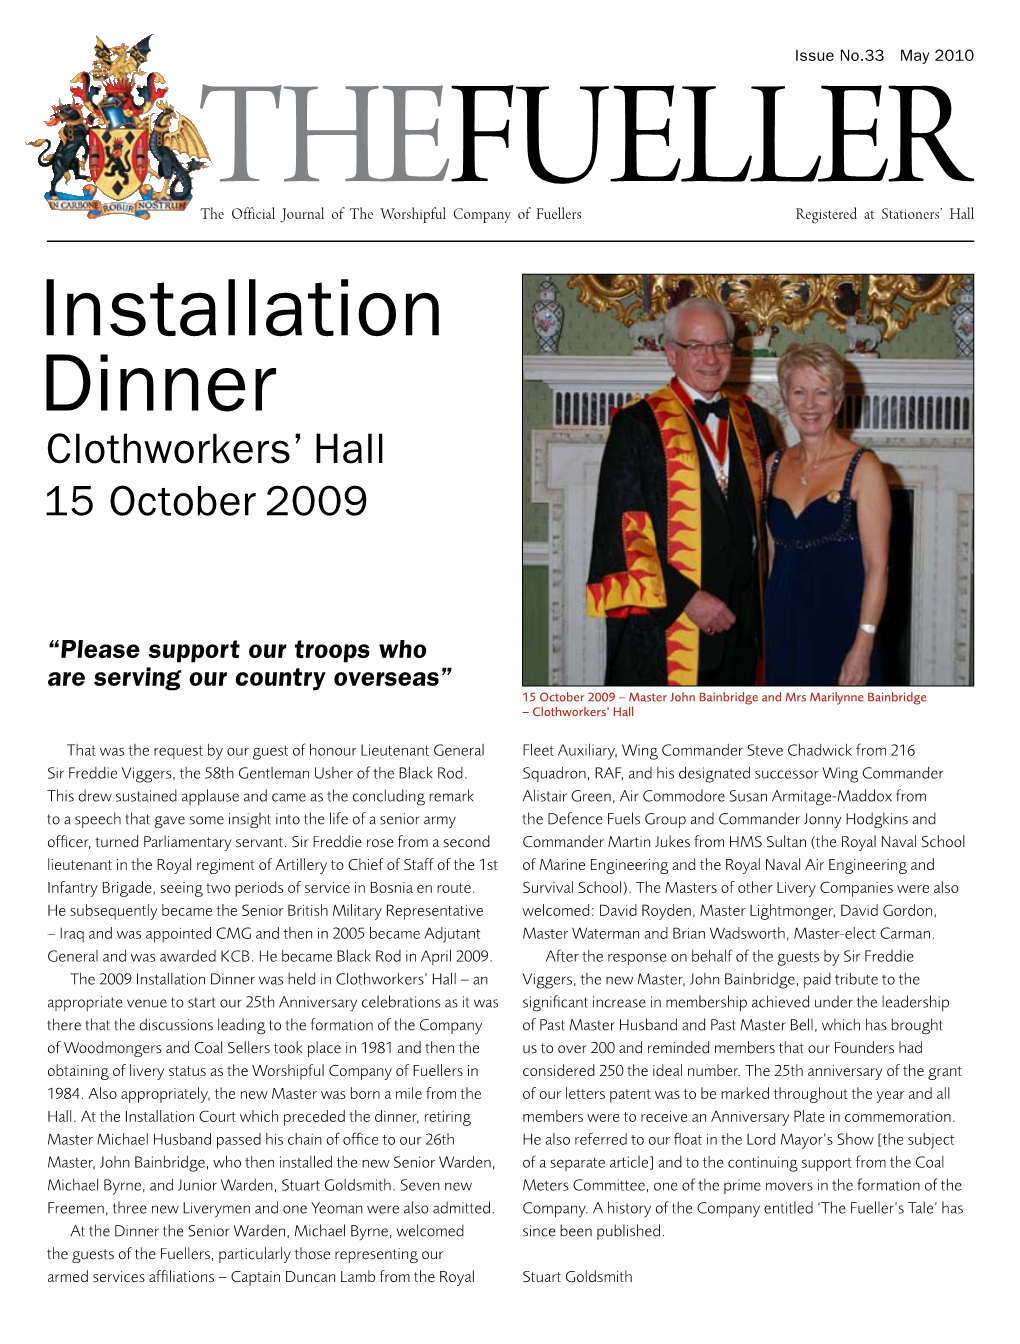 Installation Dinner Clothworkers’ Hall 15 October 2009